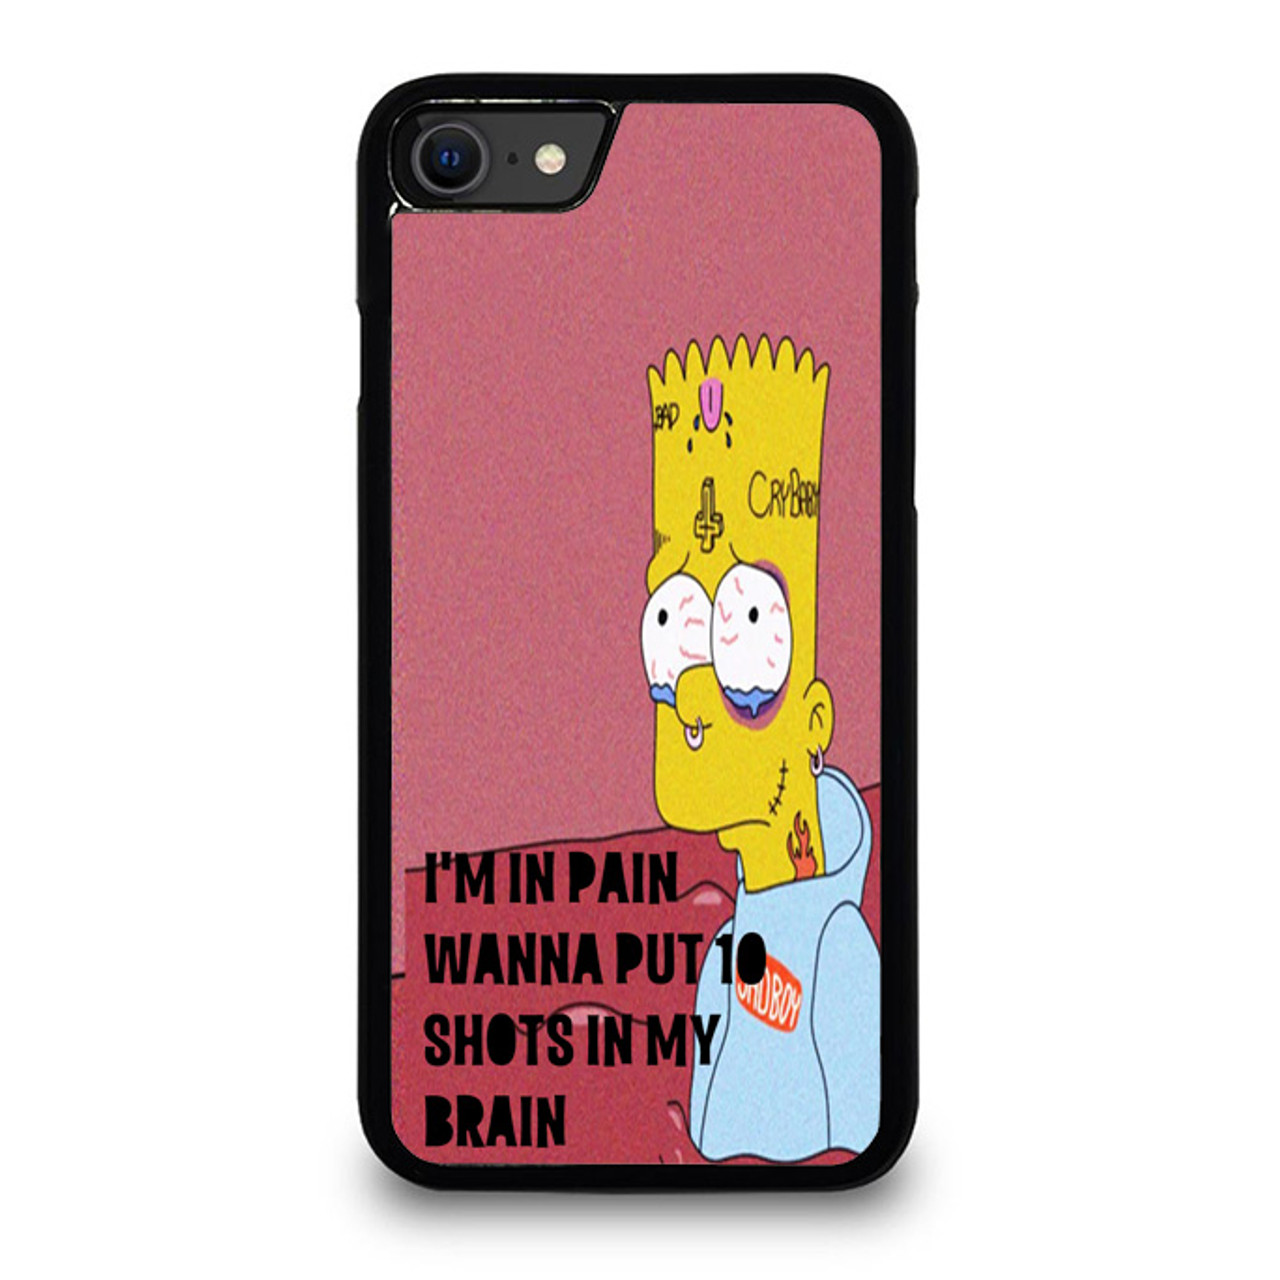 Bart Simpson Xxxtentacion Sad For iPhone SE 2020 Case Cover